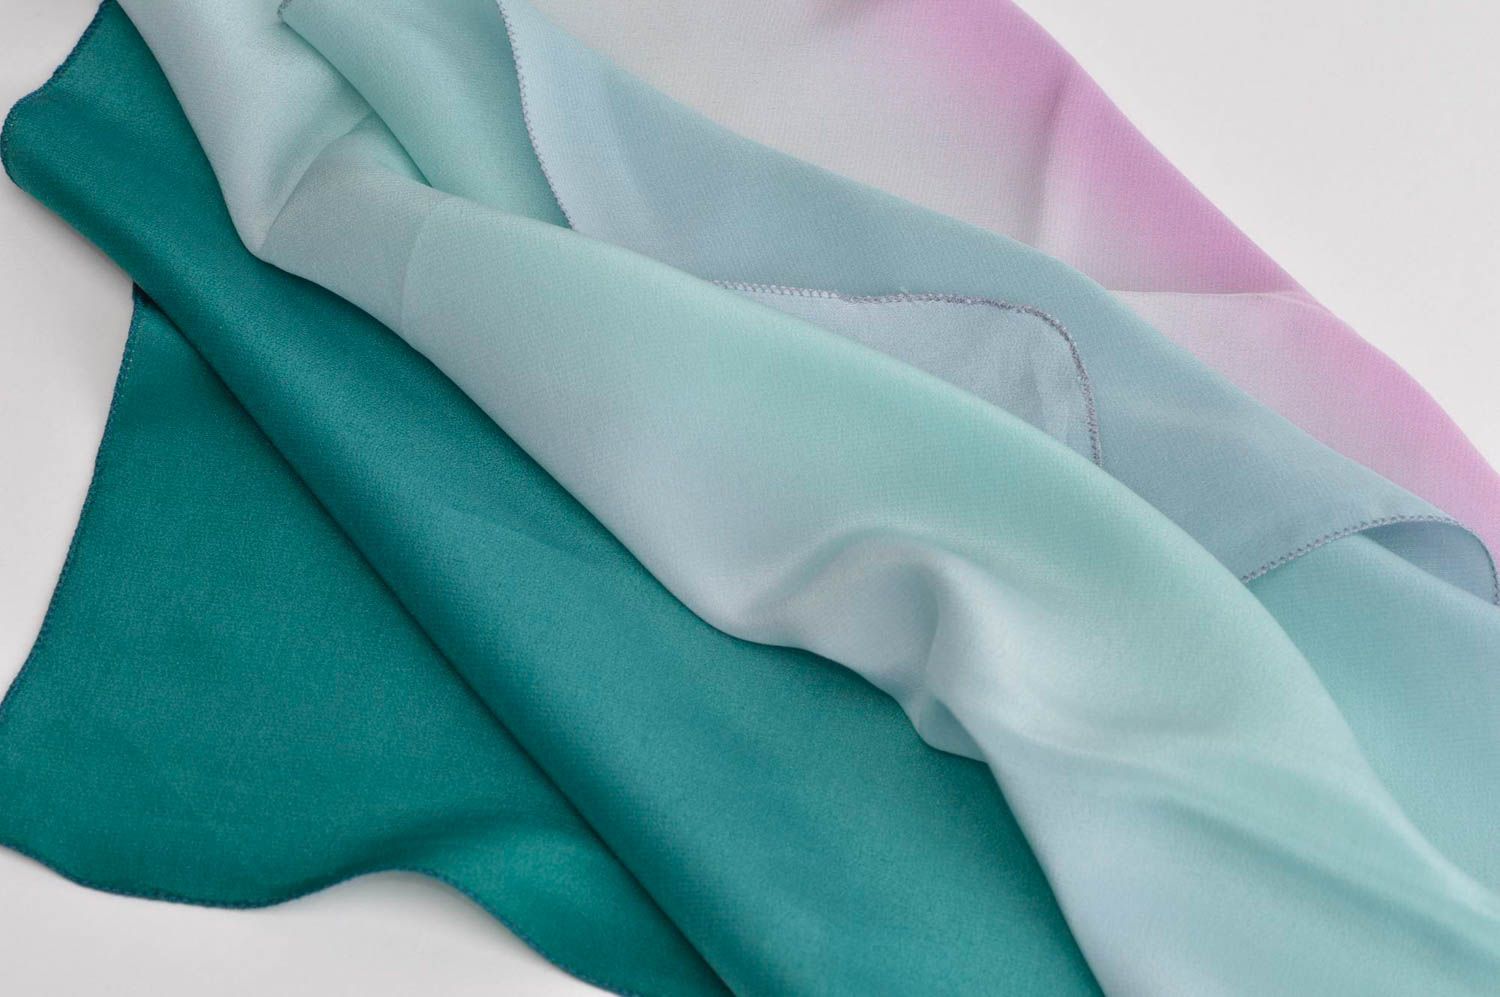 Симпатичный платок ручной работы платок из шелка светлый женский аксессуар фото 2